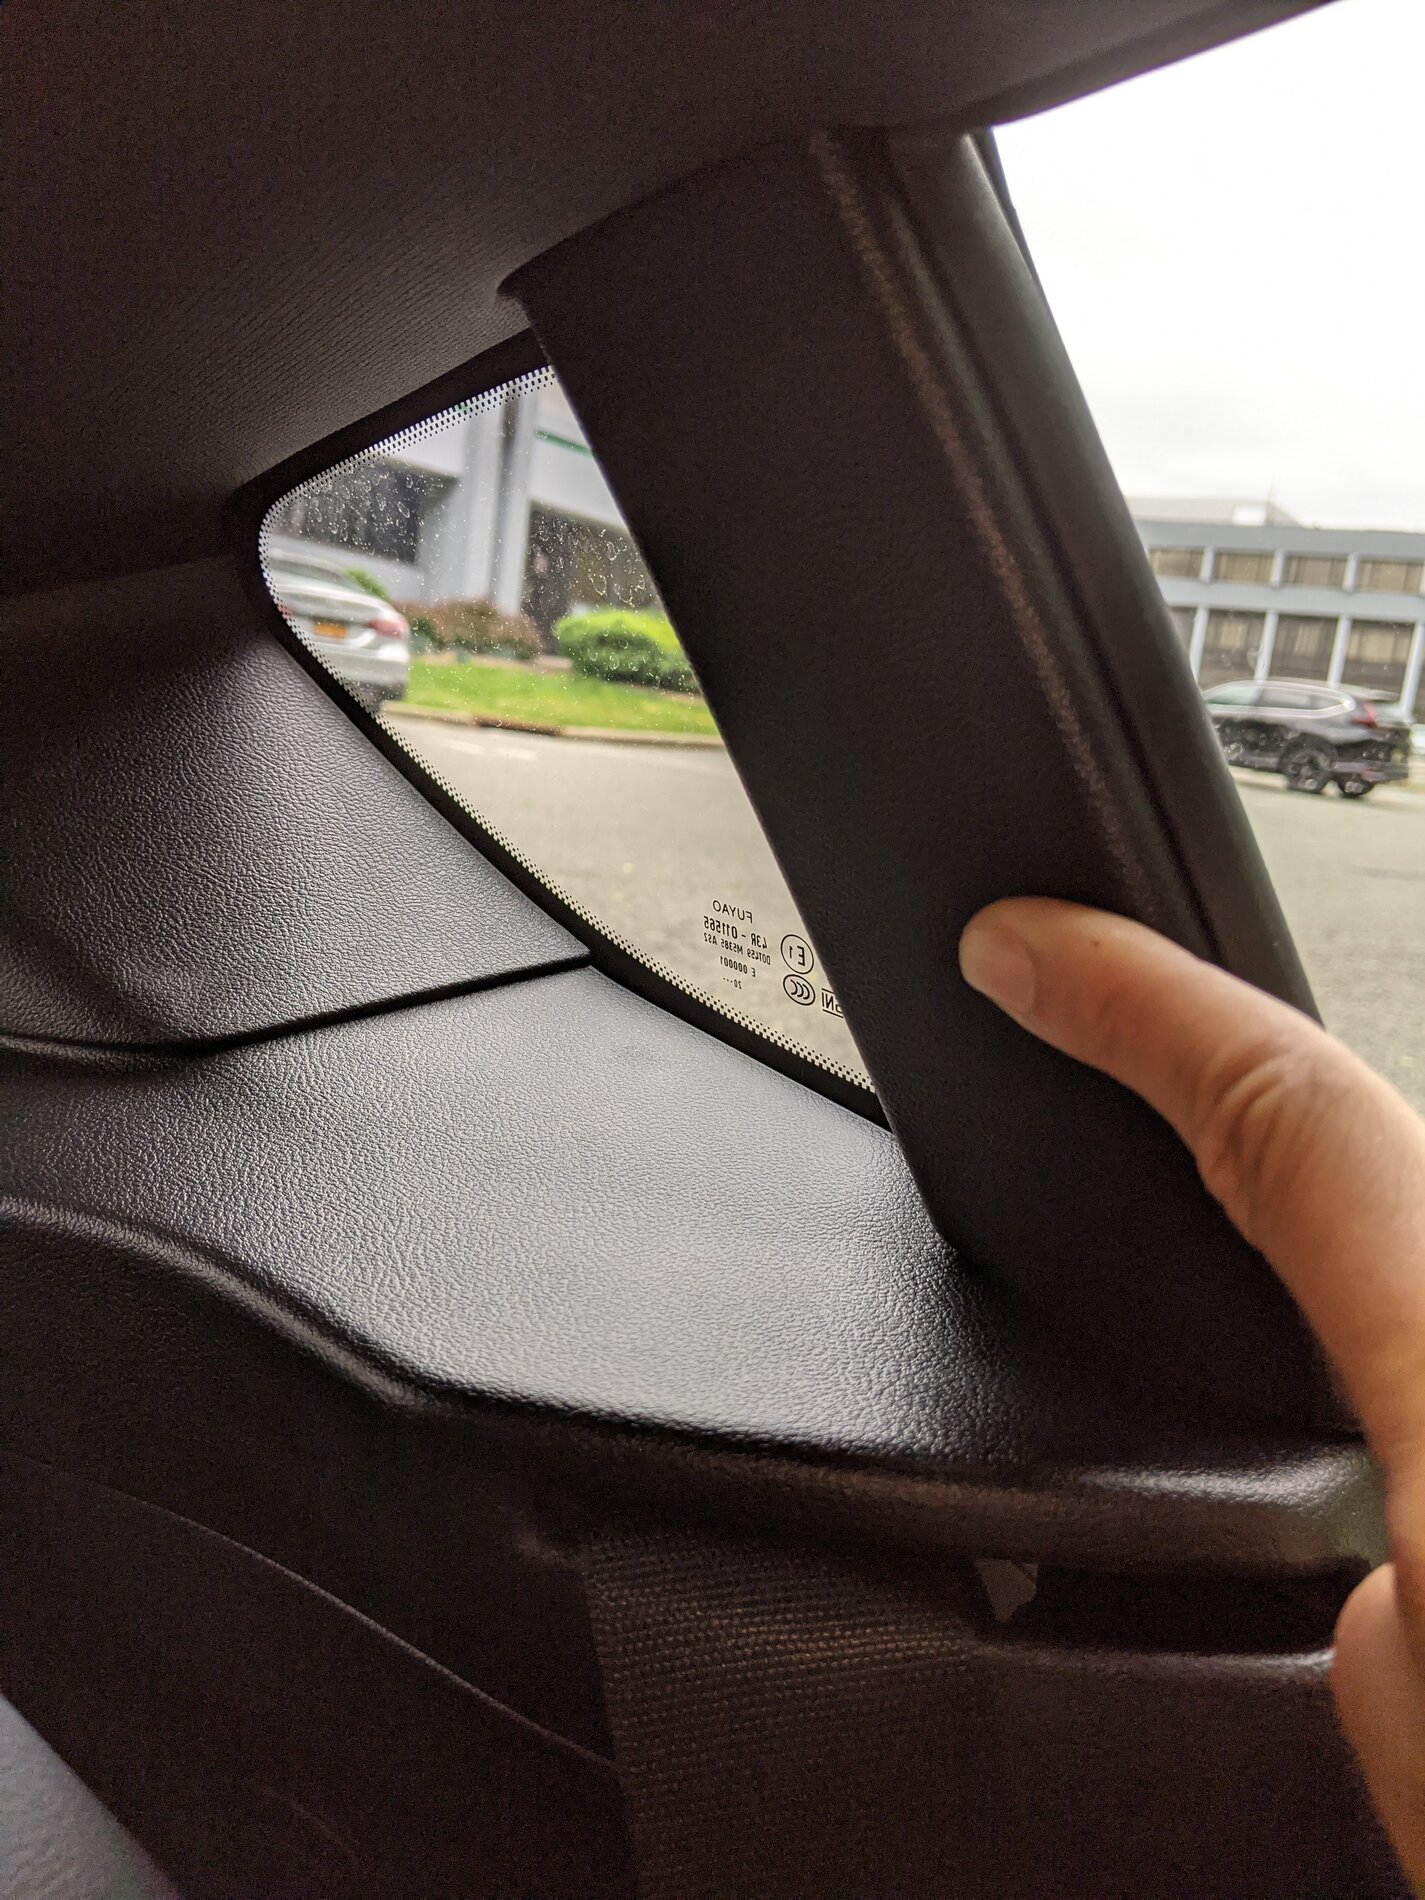 Getting strangled by seat belt  SupraMKV - 2020+ Toyota Supra Forum (A90  MKV Generation)